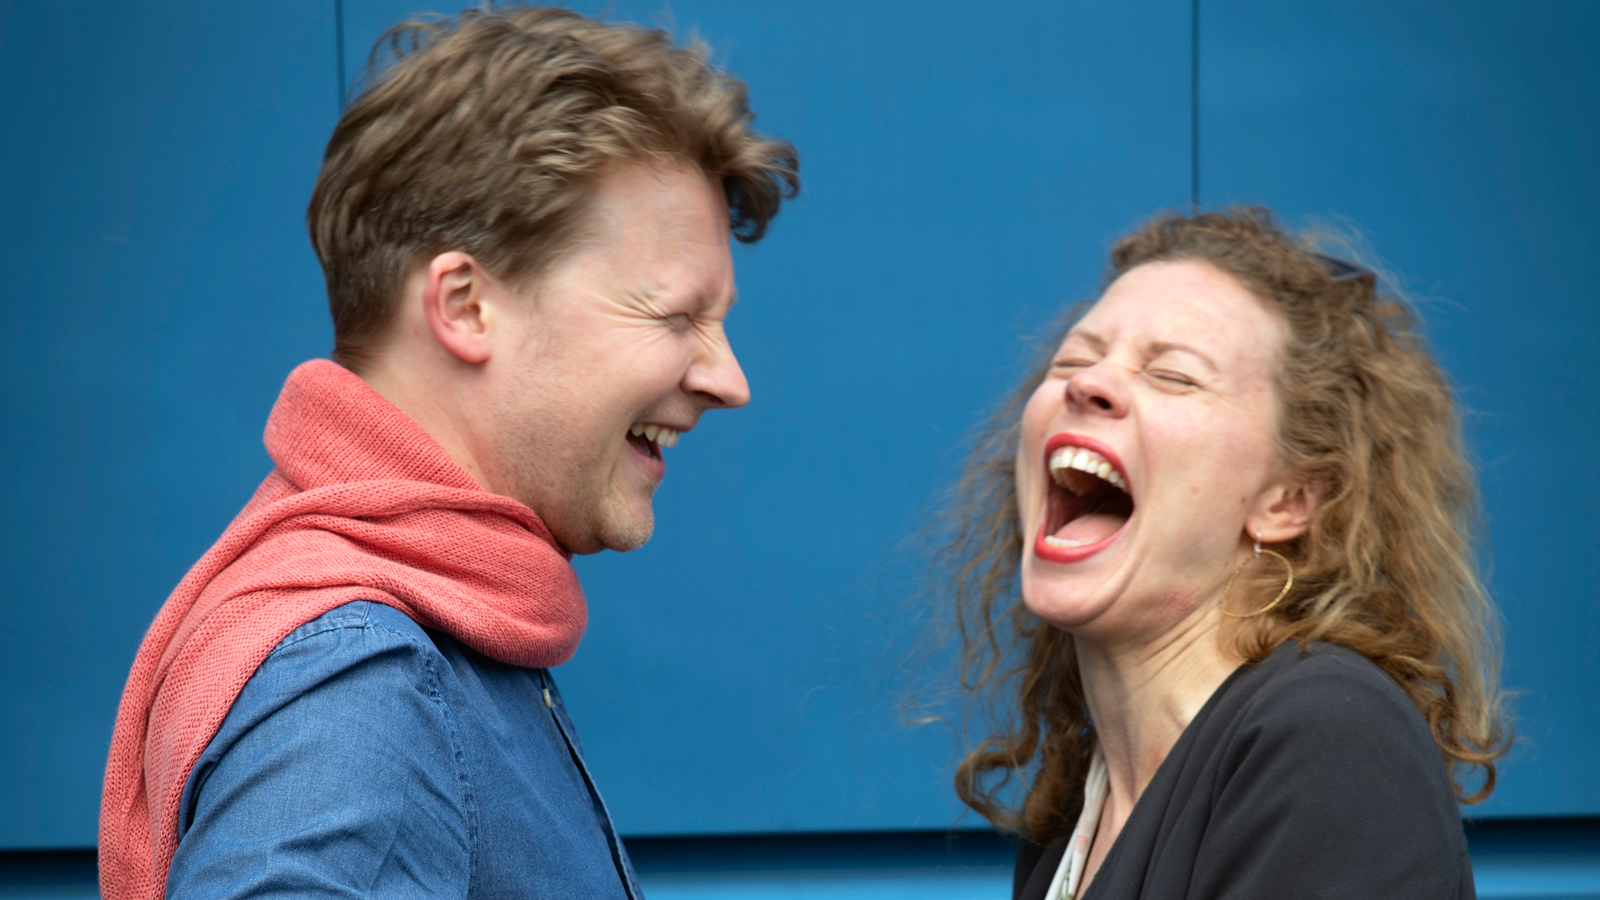 Kuvassa ovat Antti Tikkanen ja Minna Pensola iloisesti nauraen.  Kuva on puolivartalokuva.